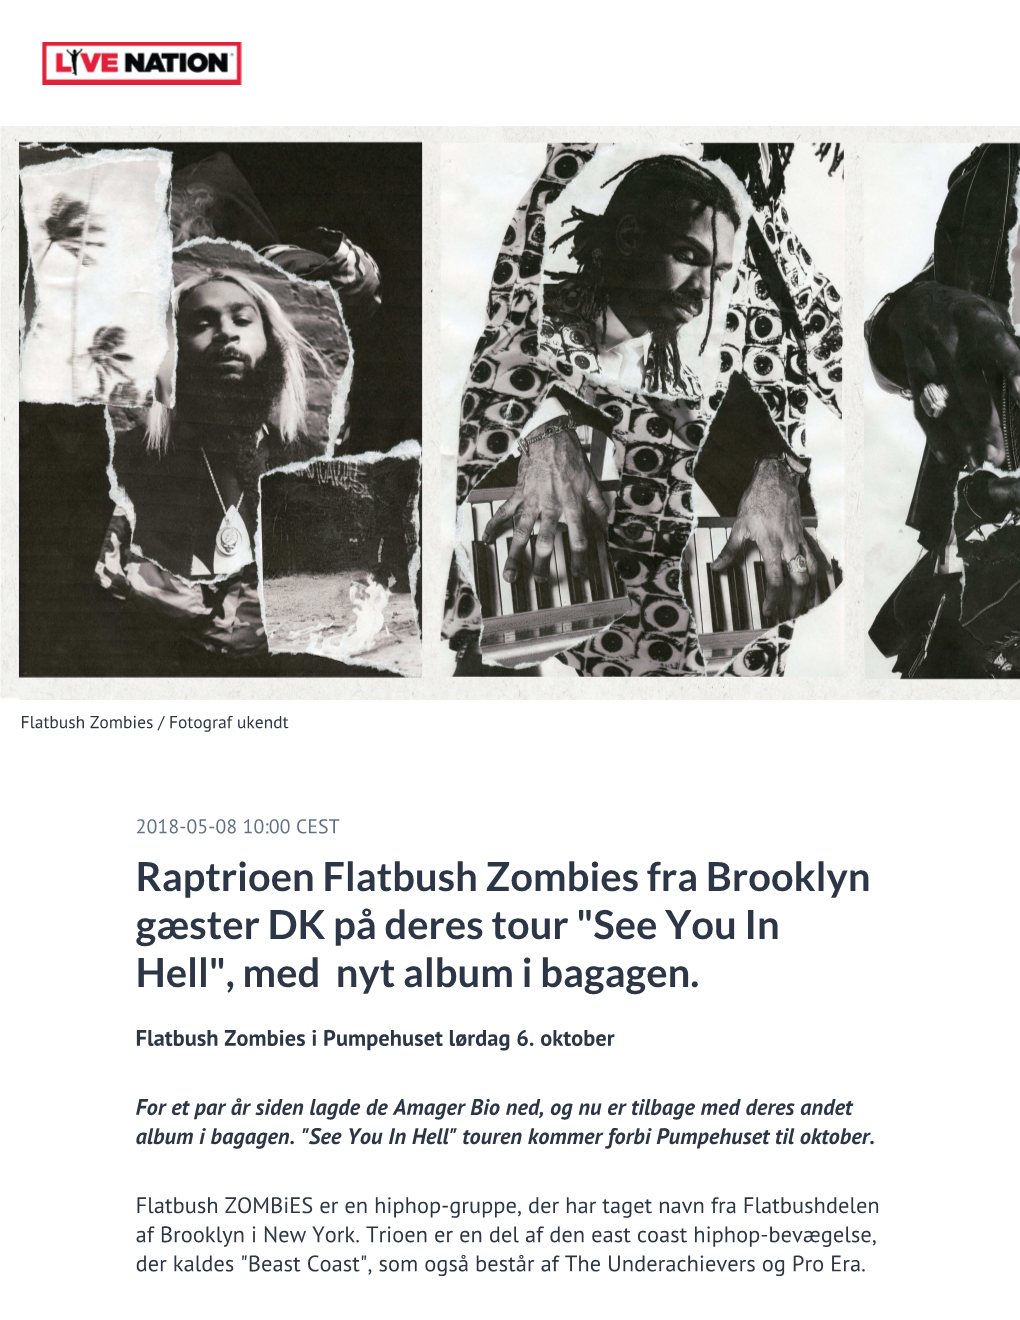 Raptrioen Flatbush Zombies Fra Brooklyn Gæster DK På Deres Tour "See You in Hell", Med Nyt Album I Bagagen